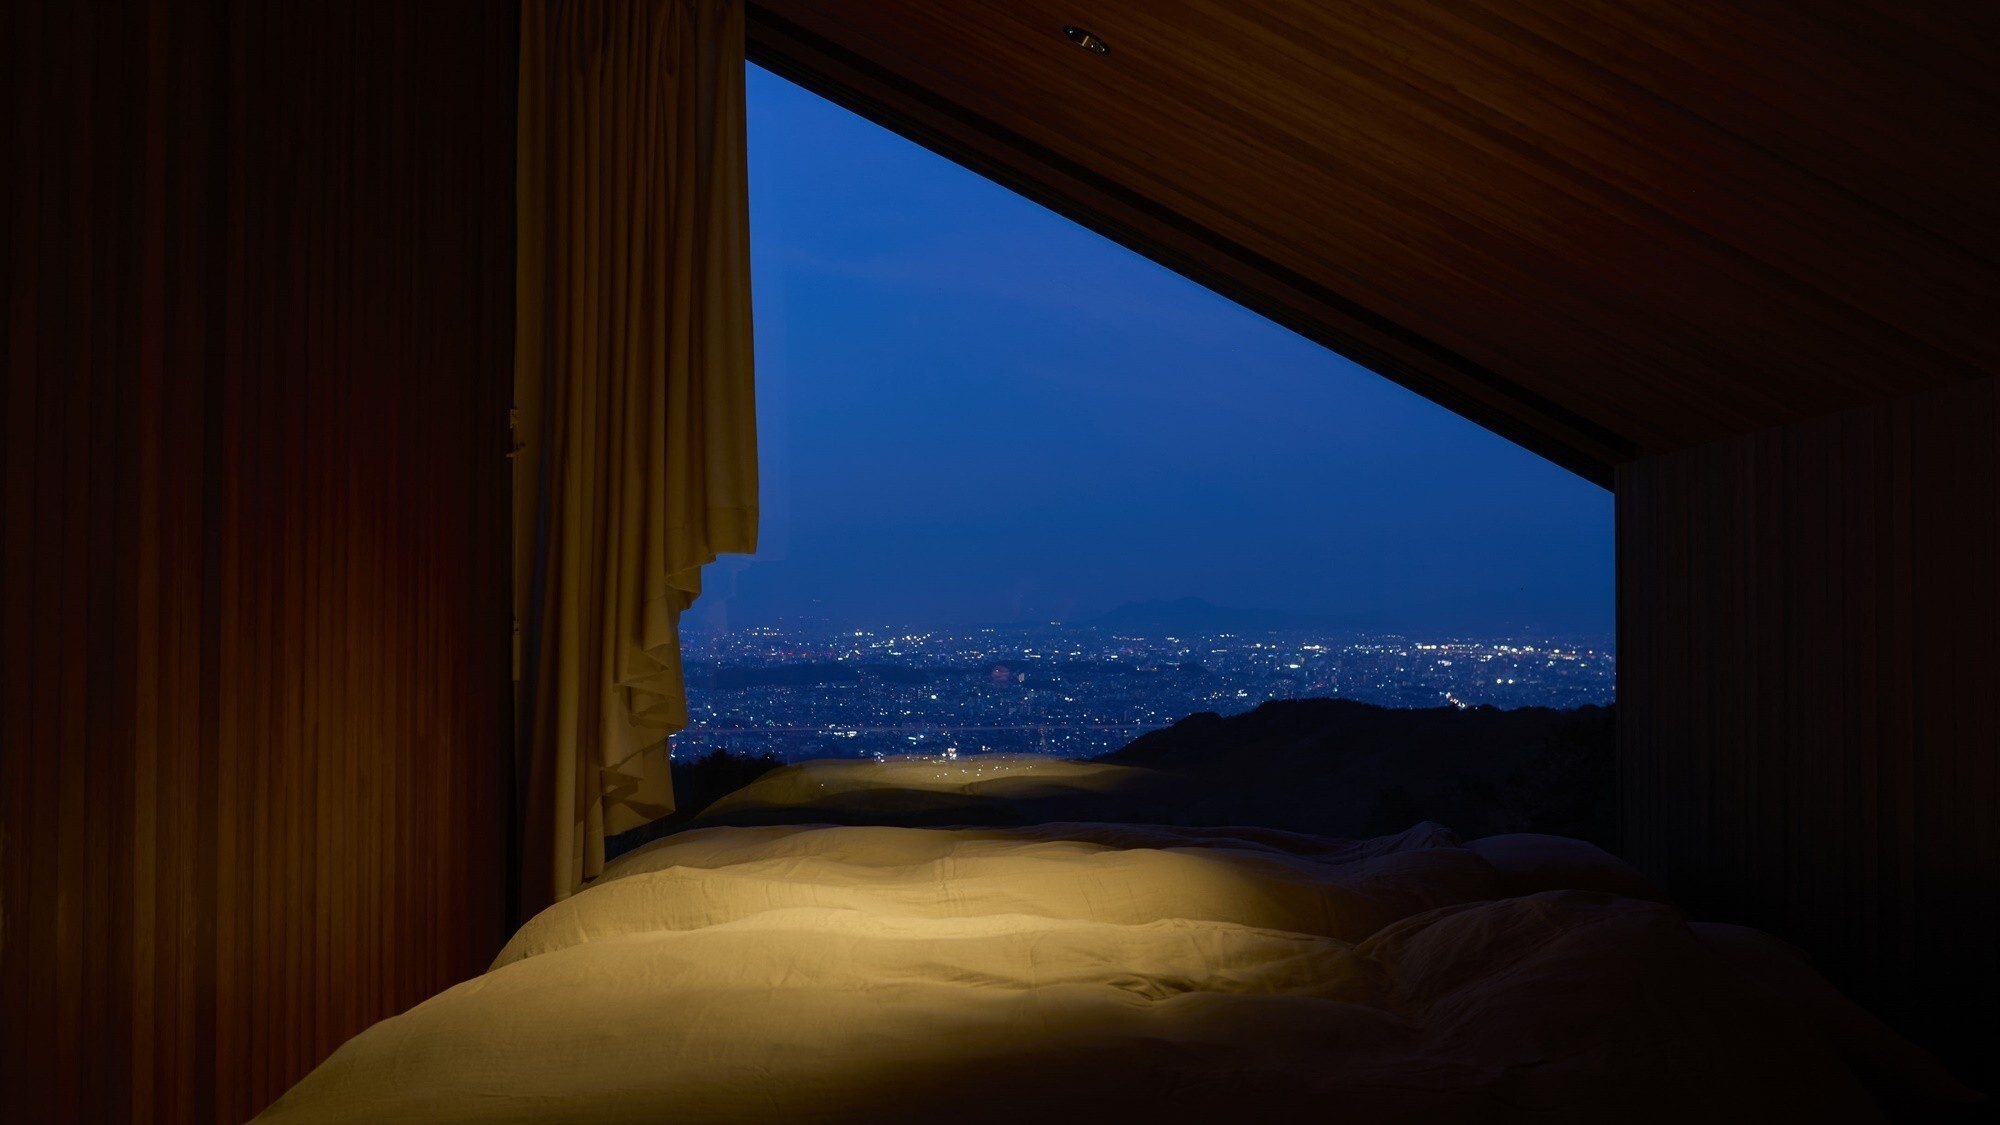 COTTAGE｜寝室の大きな窓ガラスから見える夜景を眺めながら眠りにつくことができます※イメージ